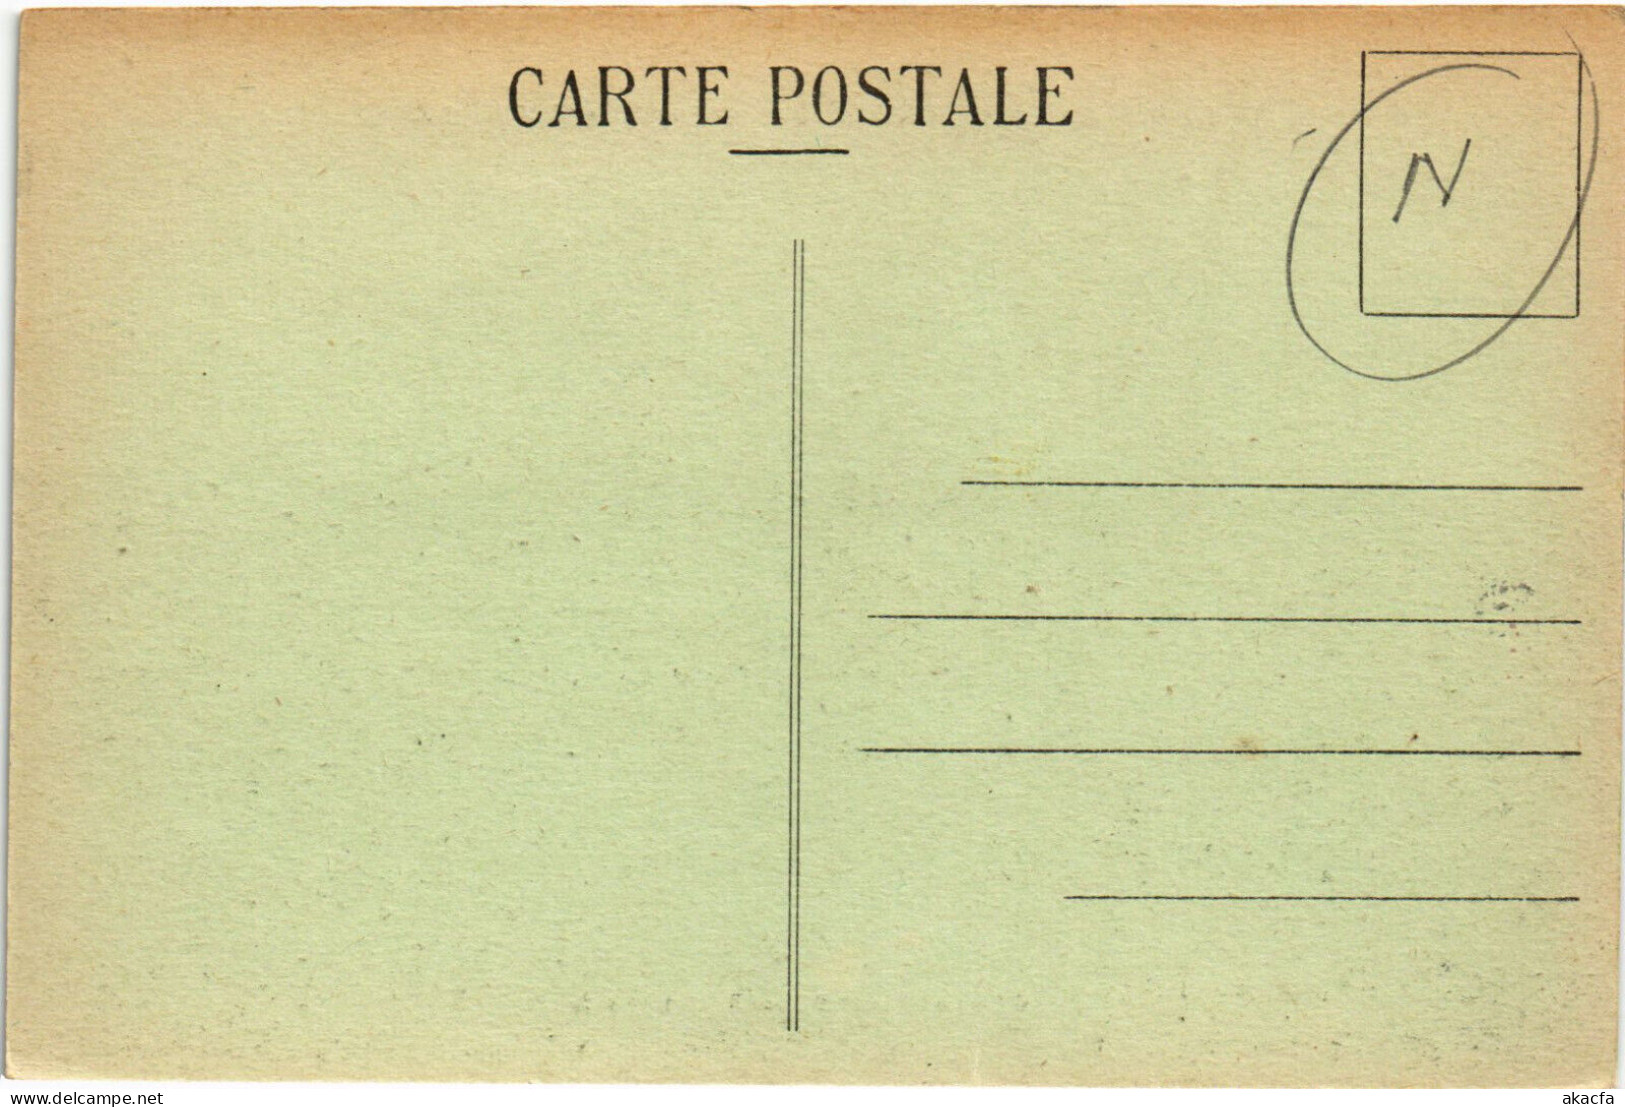 PC HAITI CARIBBEAN PORT-au-PRINCE CASERNES PALAIS Vintage Postcard (b52269) - Haiti